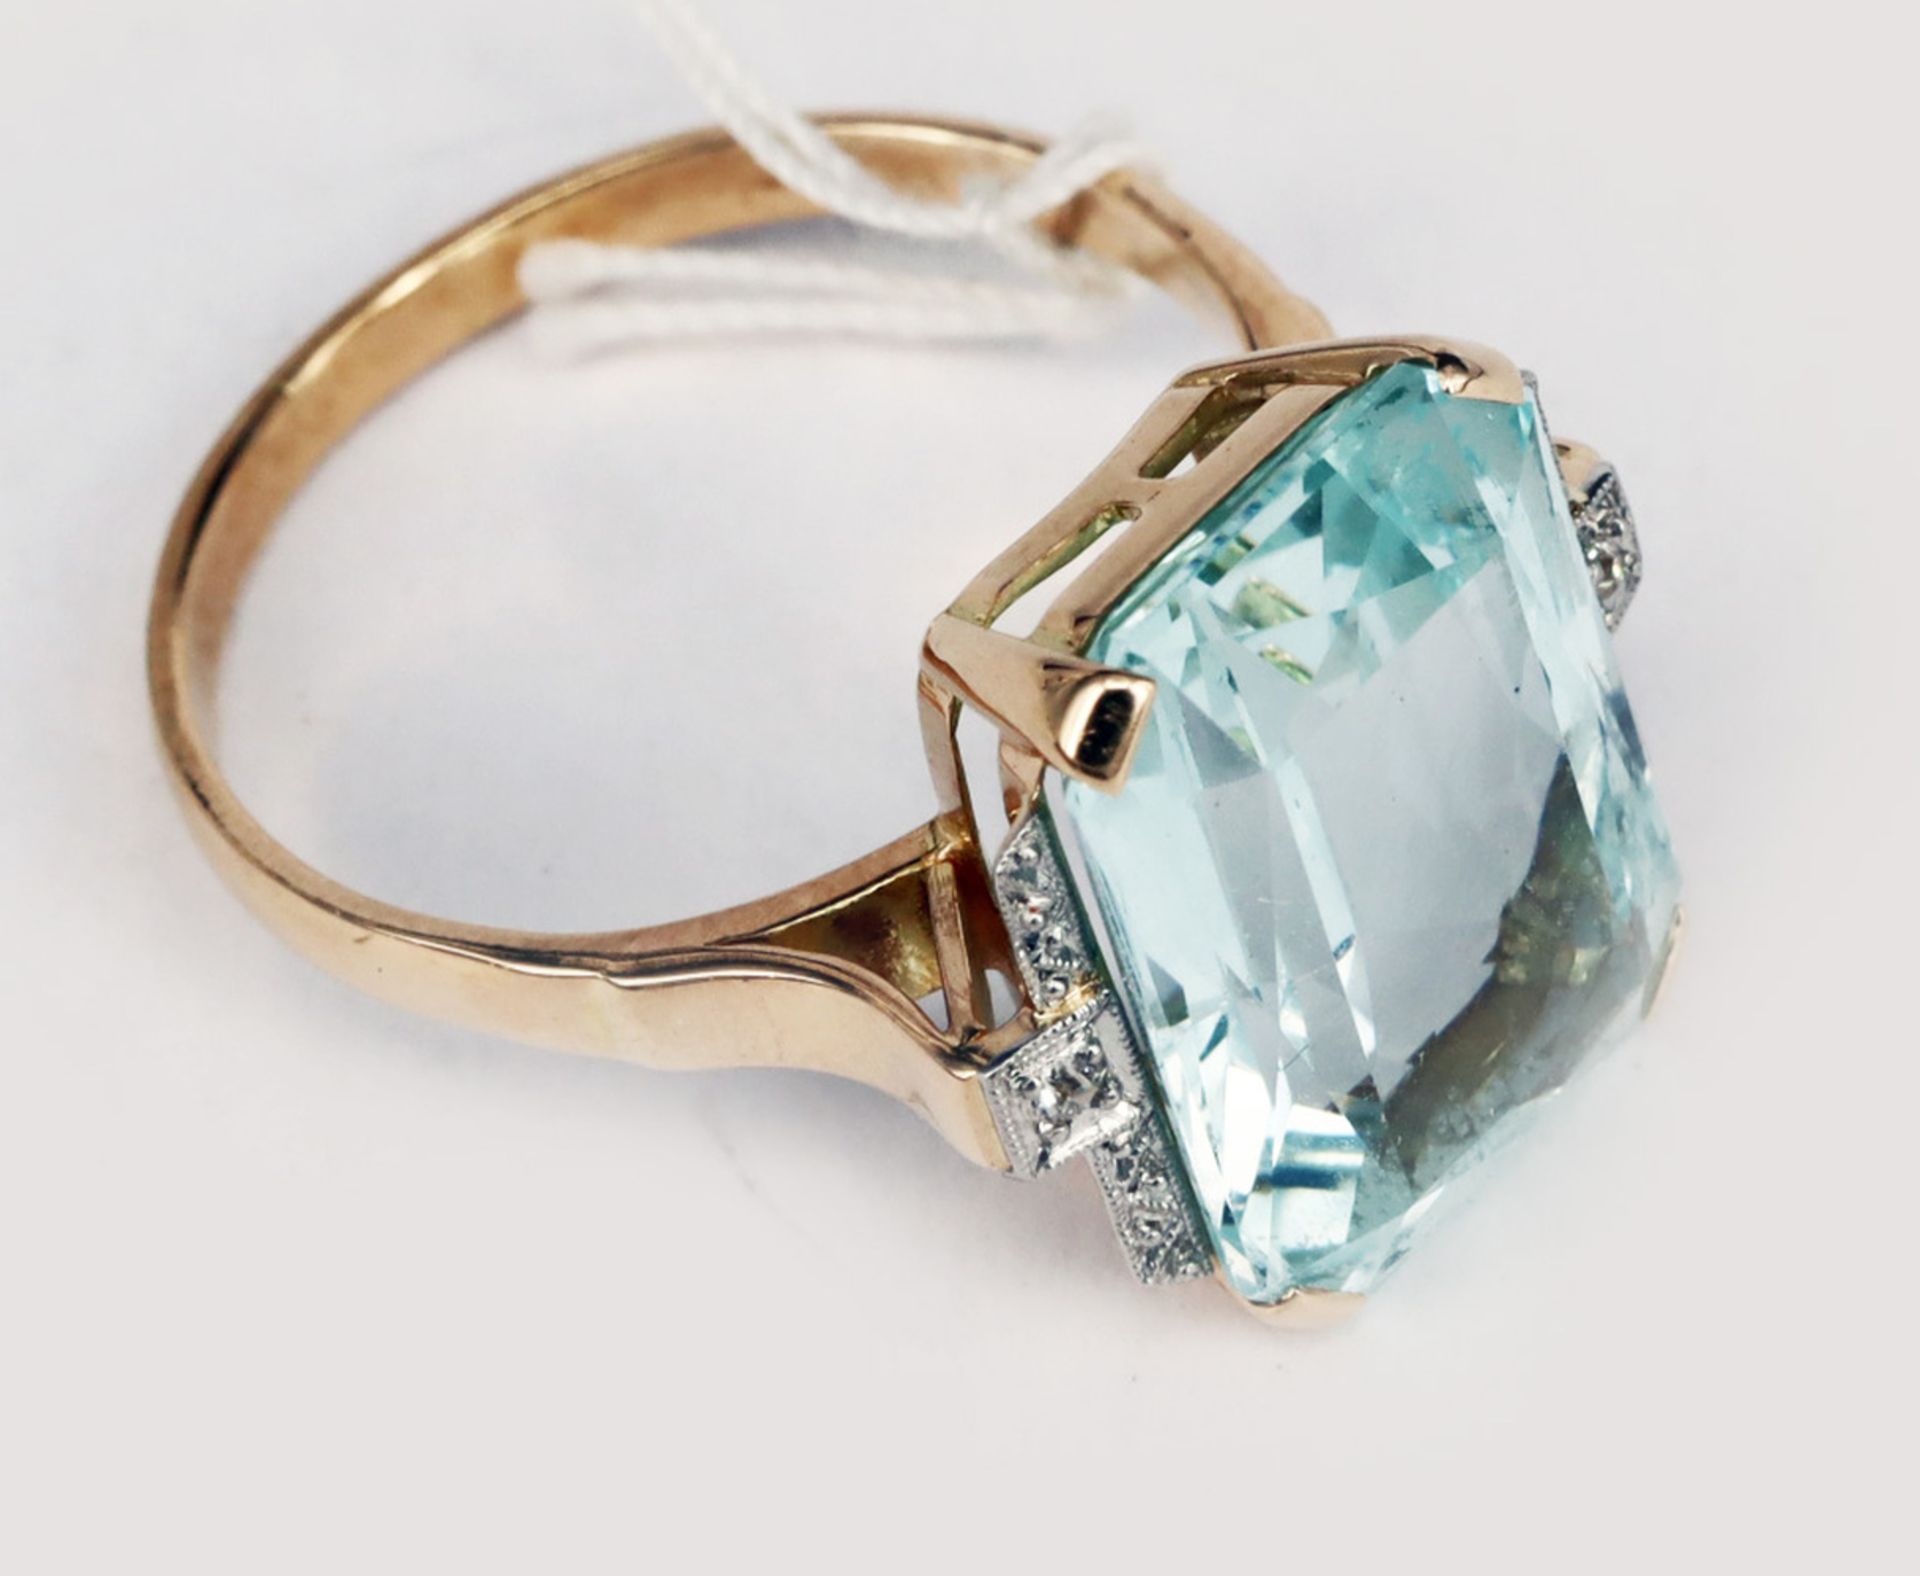 Ring, 585er GG, mit großem Aquamarin ca. 9 ct, seitlich mit Diamanten gefasst, Altersspuren, RG56